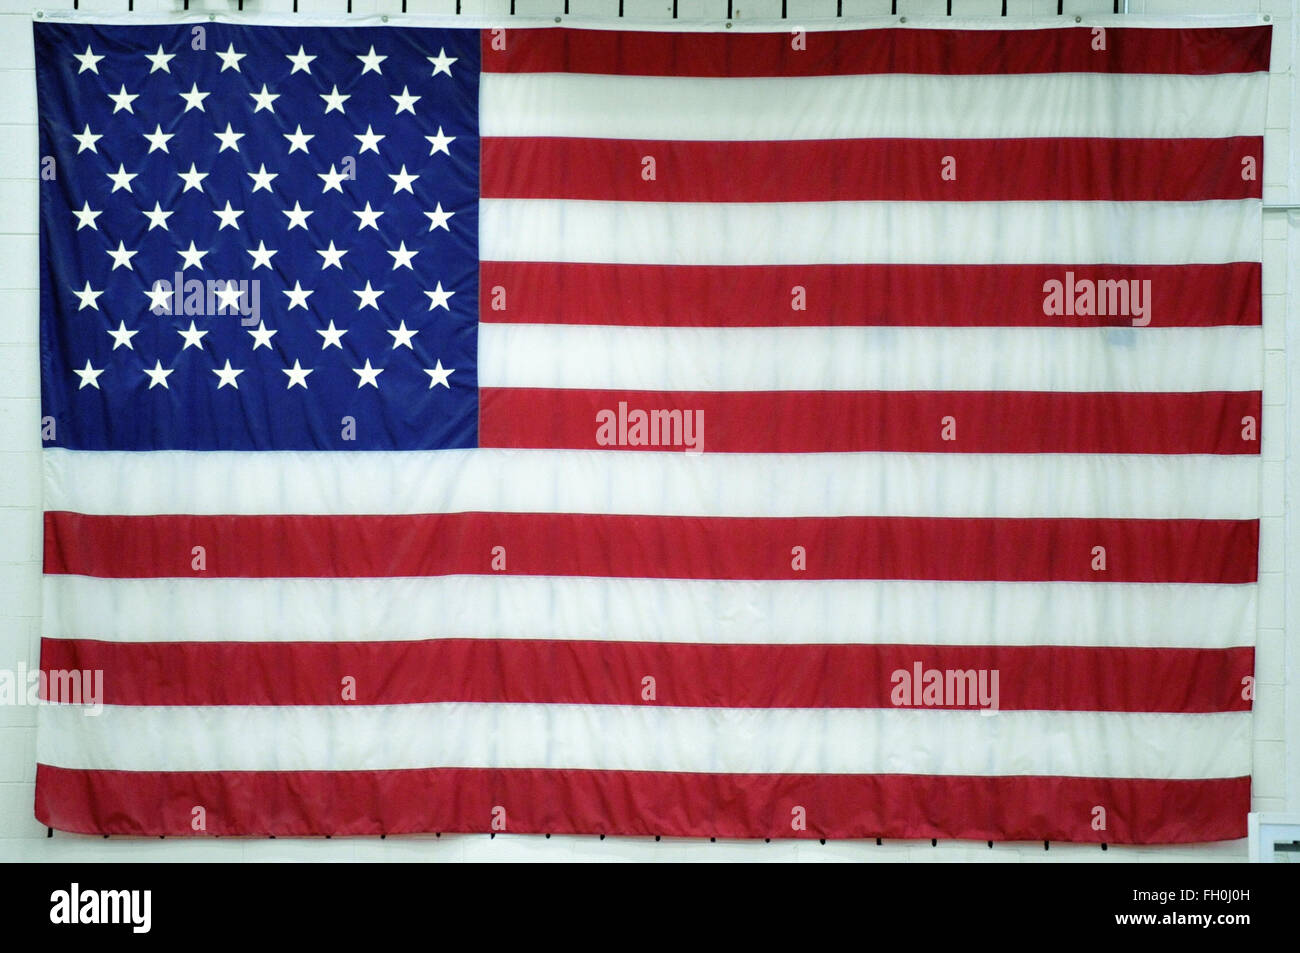 Eine große amerikanische Flagge auf dem Display an der Wand in einem Illinois High School Gymnasium. Bartlett, Illinois, USA. Stockfoto